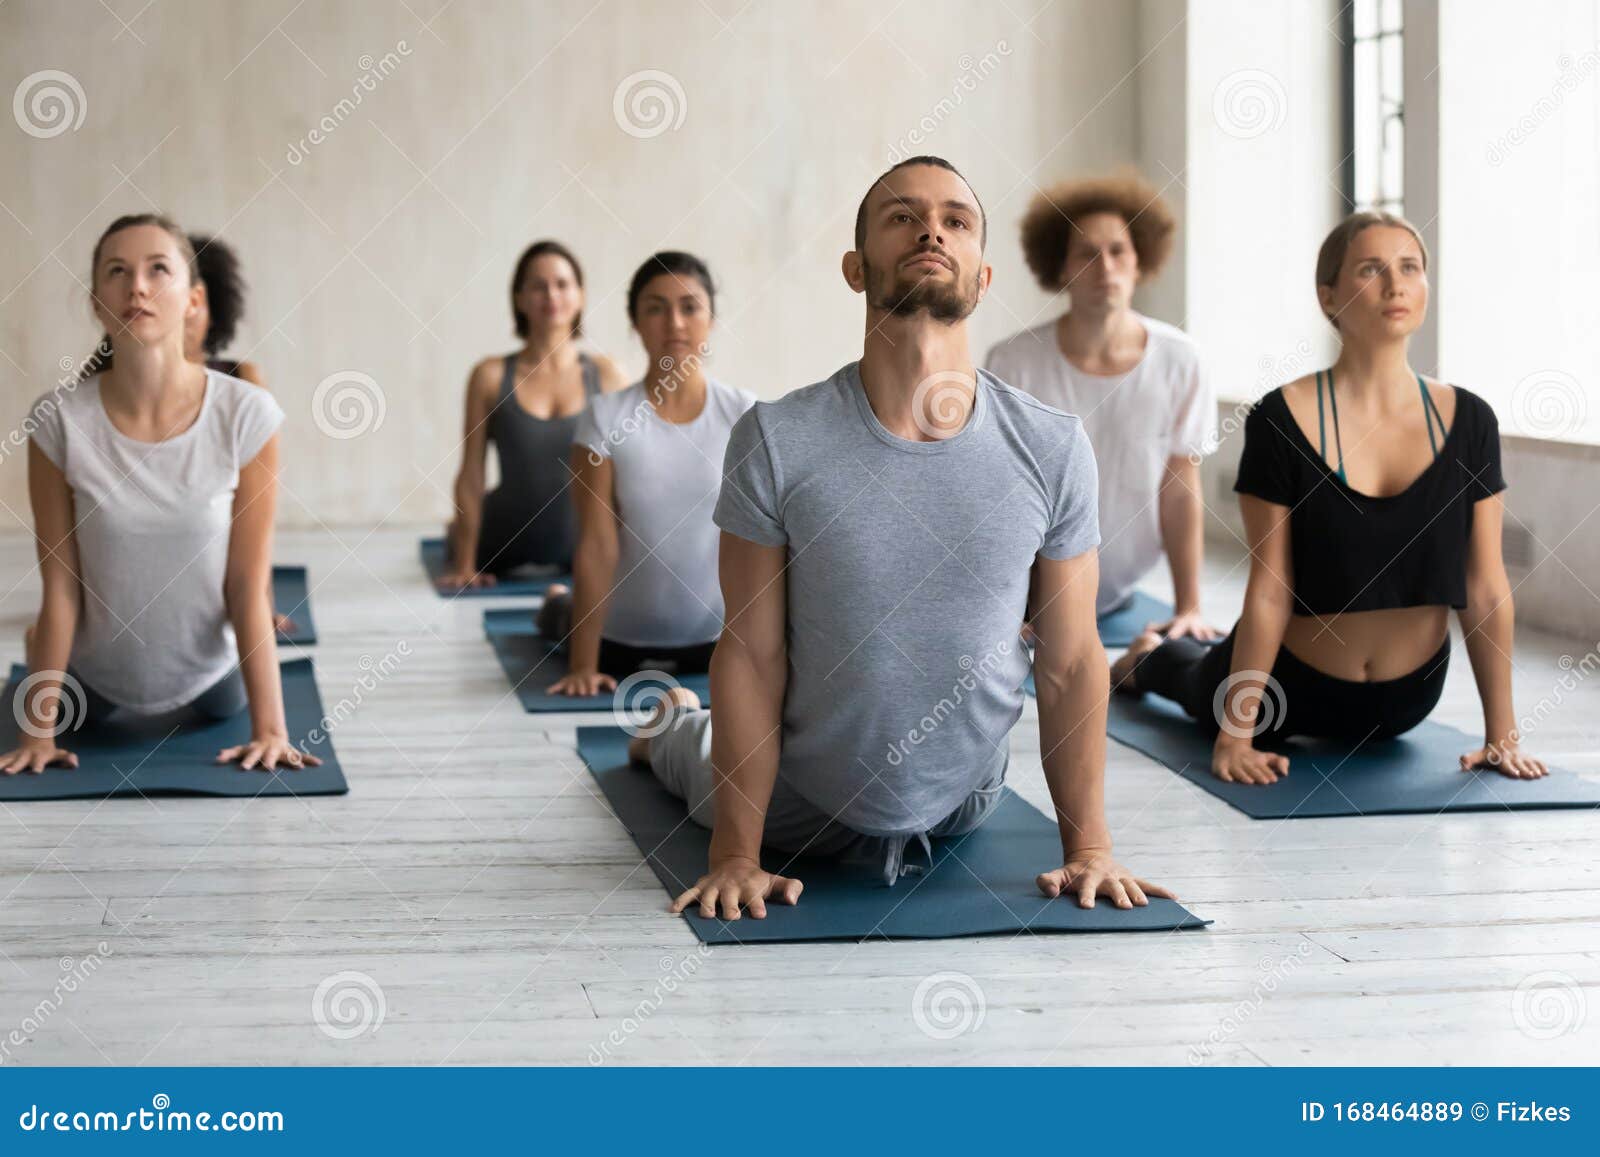 Aulas de ginástica aeróbica em grupo e ioga pessoas em pose de